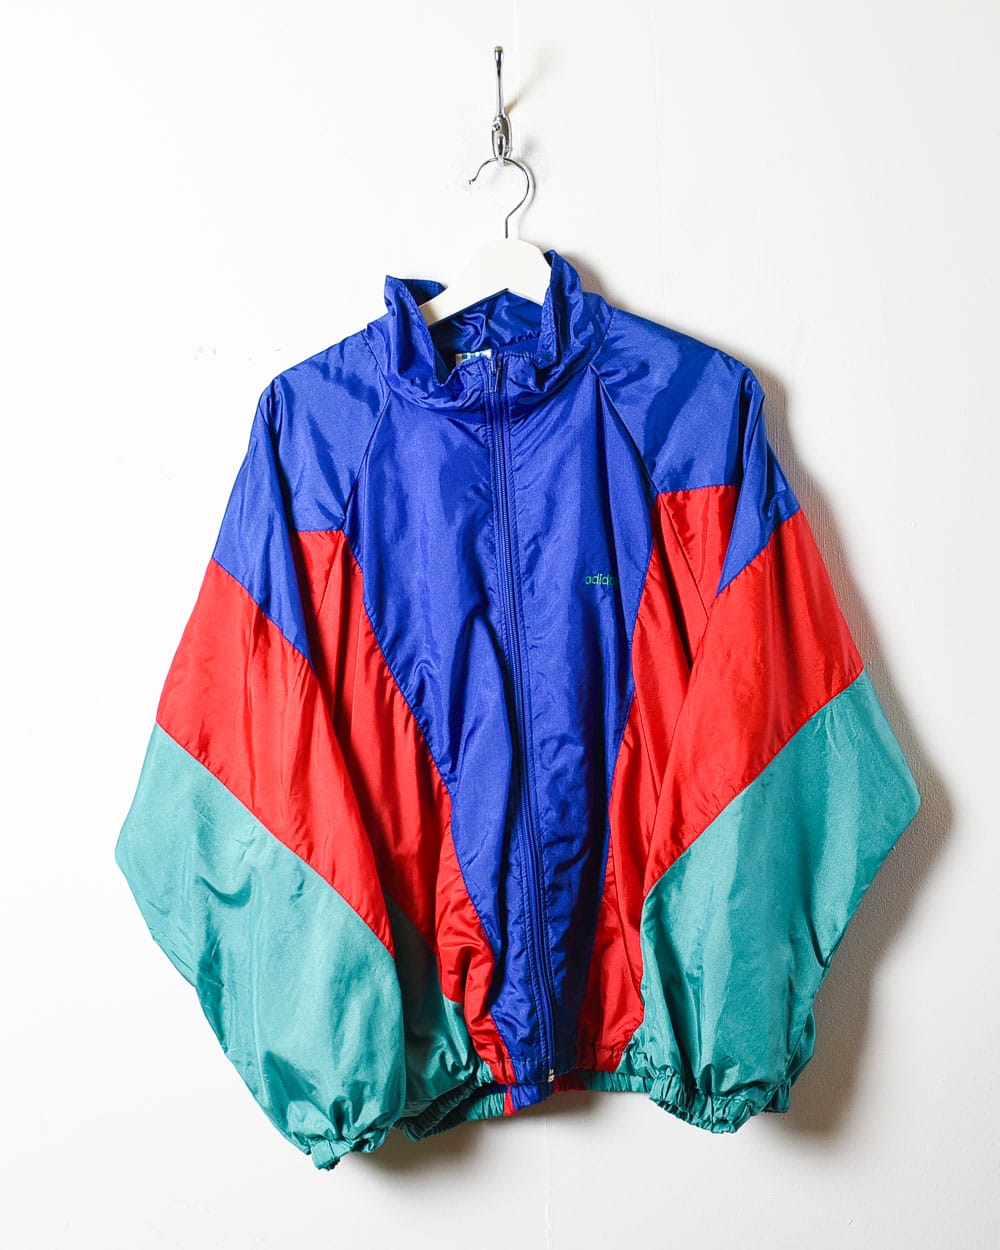 Blue Adidas Shell Jacket - Large